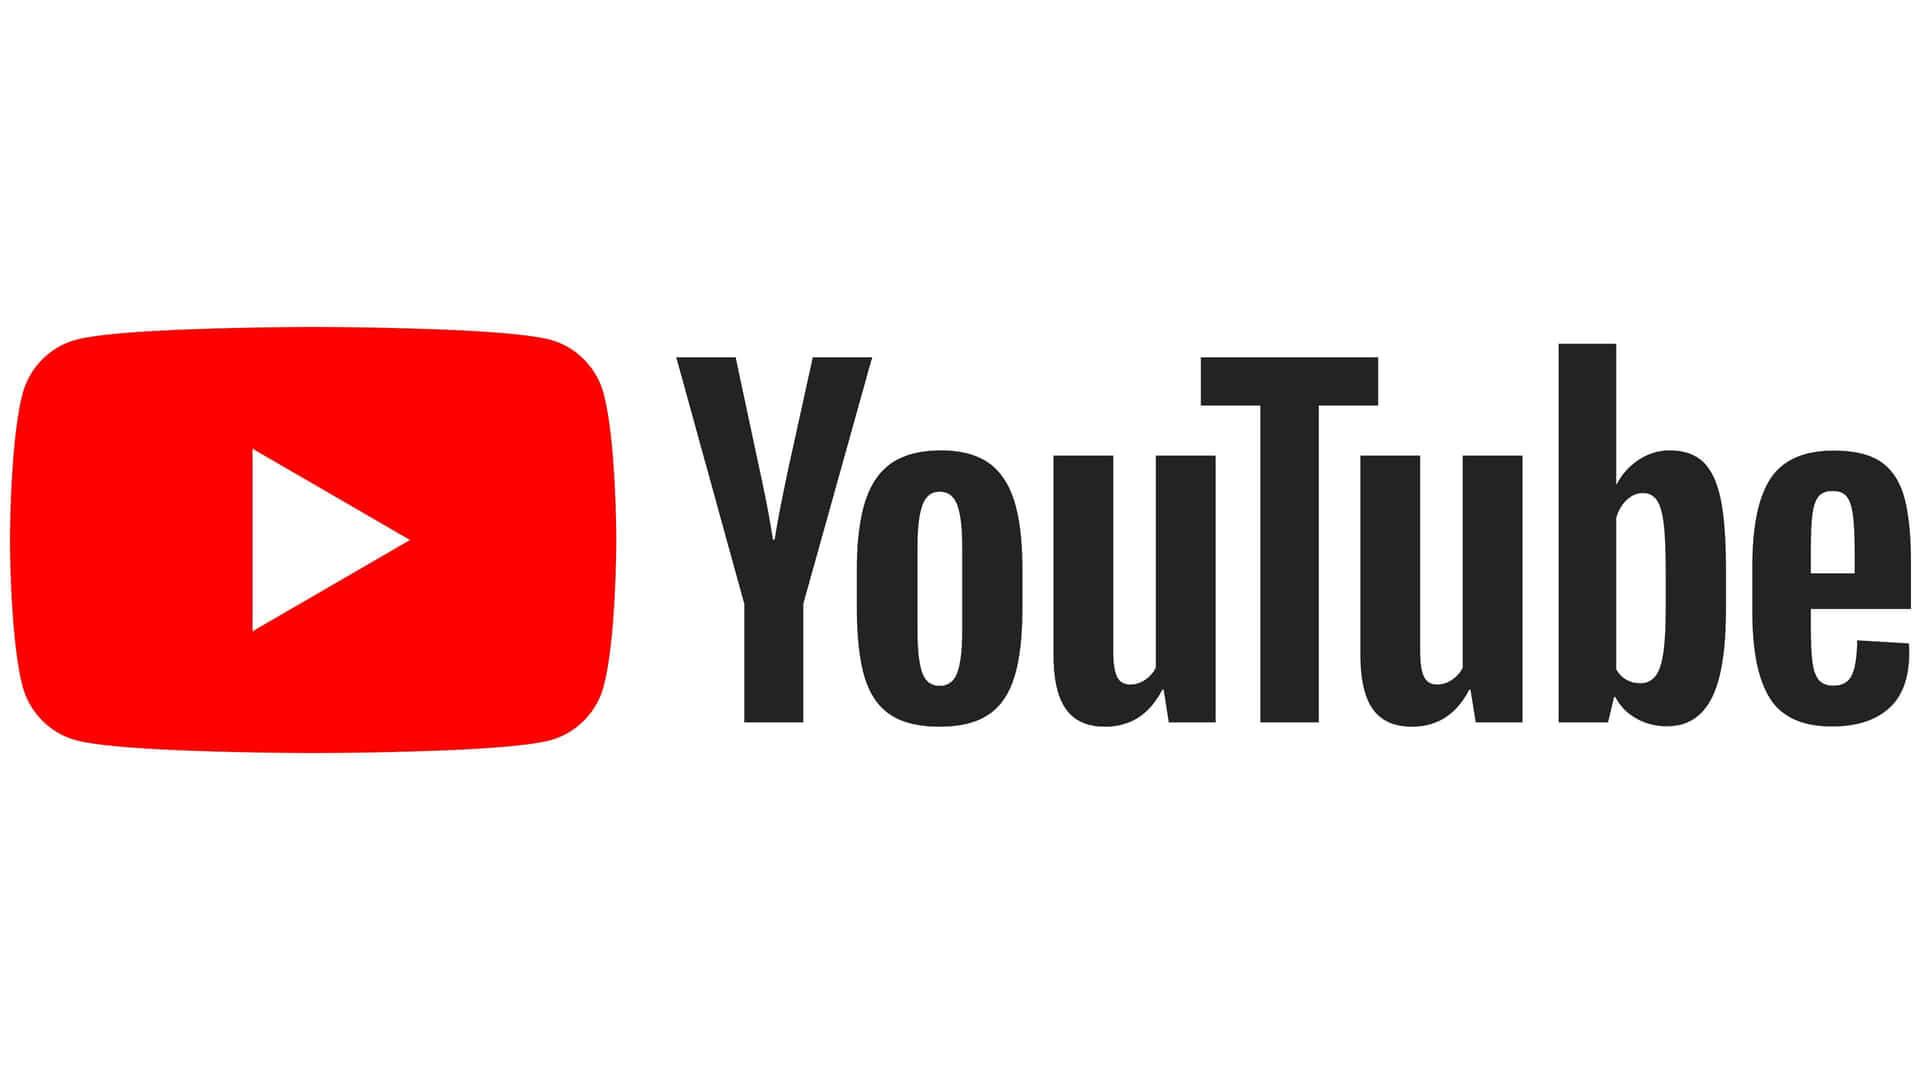 Logode Youtube En Degradado Negro Y Rojo